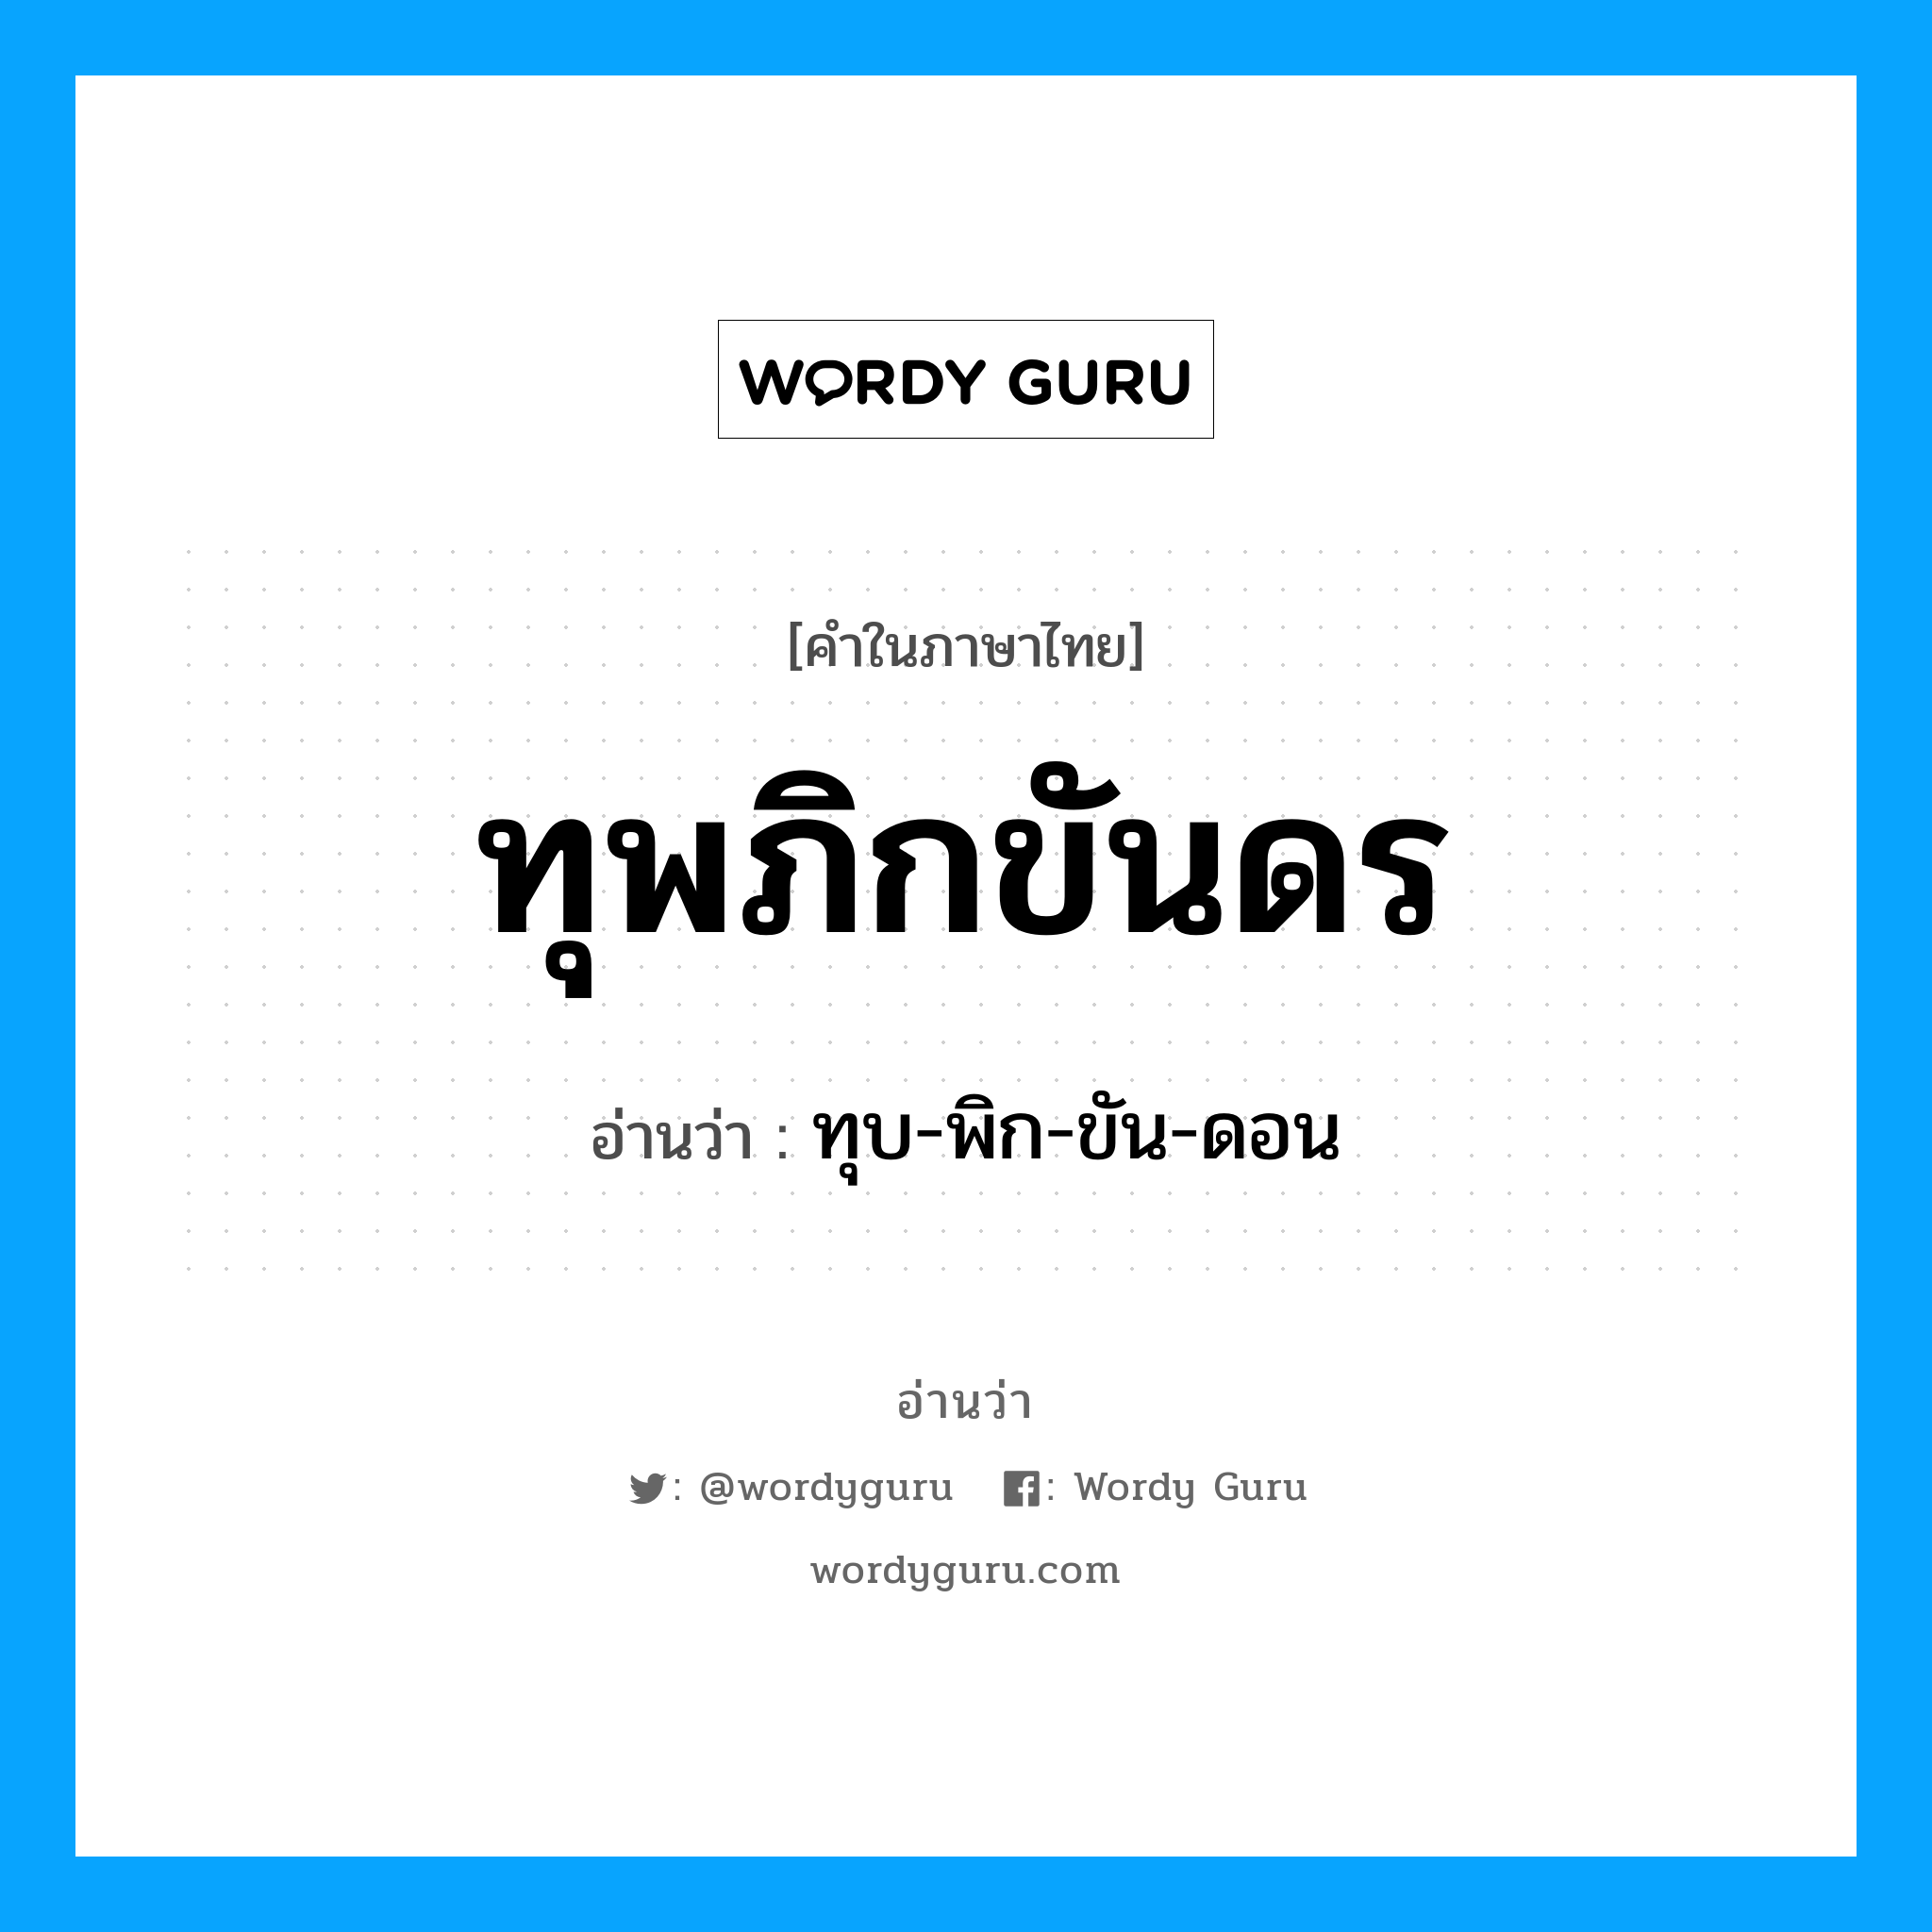 ทุบ-พิก-ขัน-ดอน เป็นคำอ่านของคำไหน?, คำในภาษาไทย ทุบ-พิก-ขัน-ดอน อ่านว่า ทุพภิกขันดร